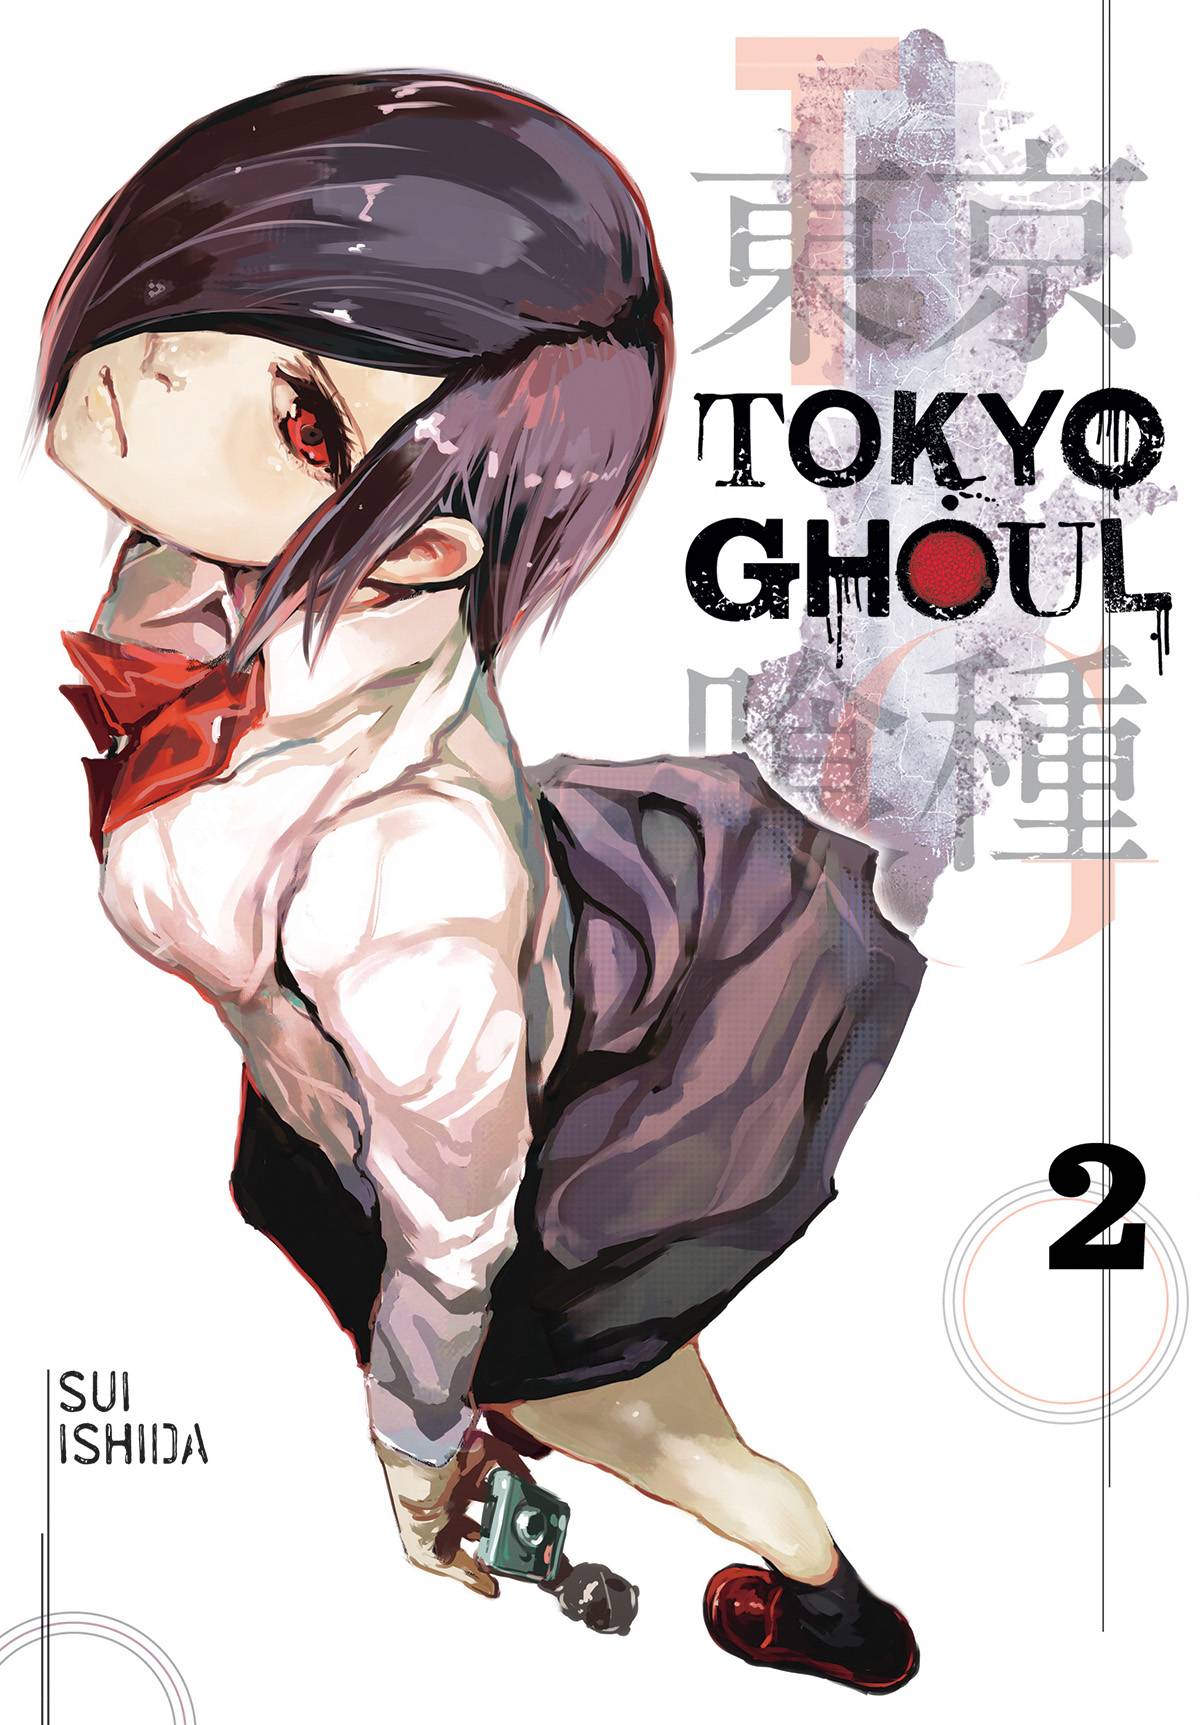 Tokyo Ghoul Vol. 02